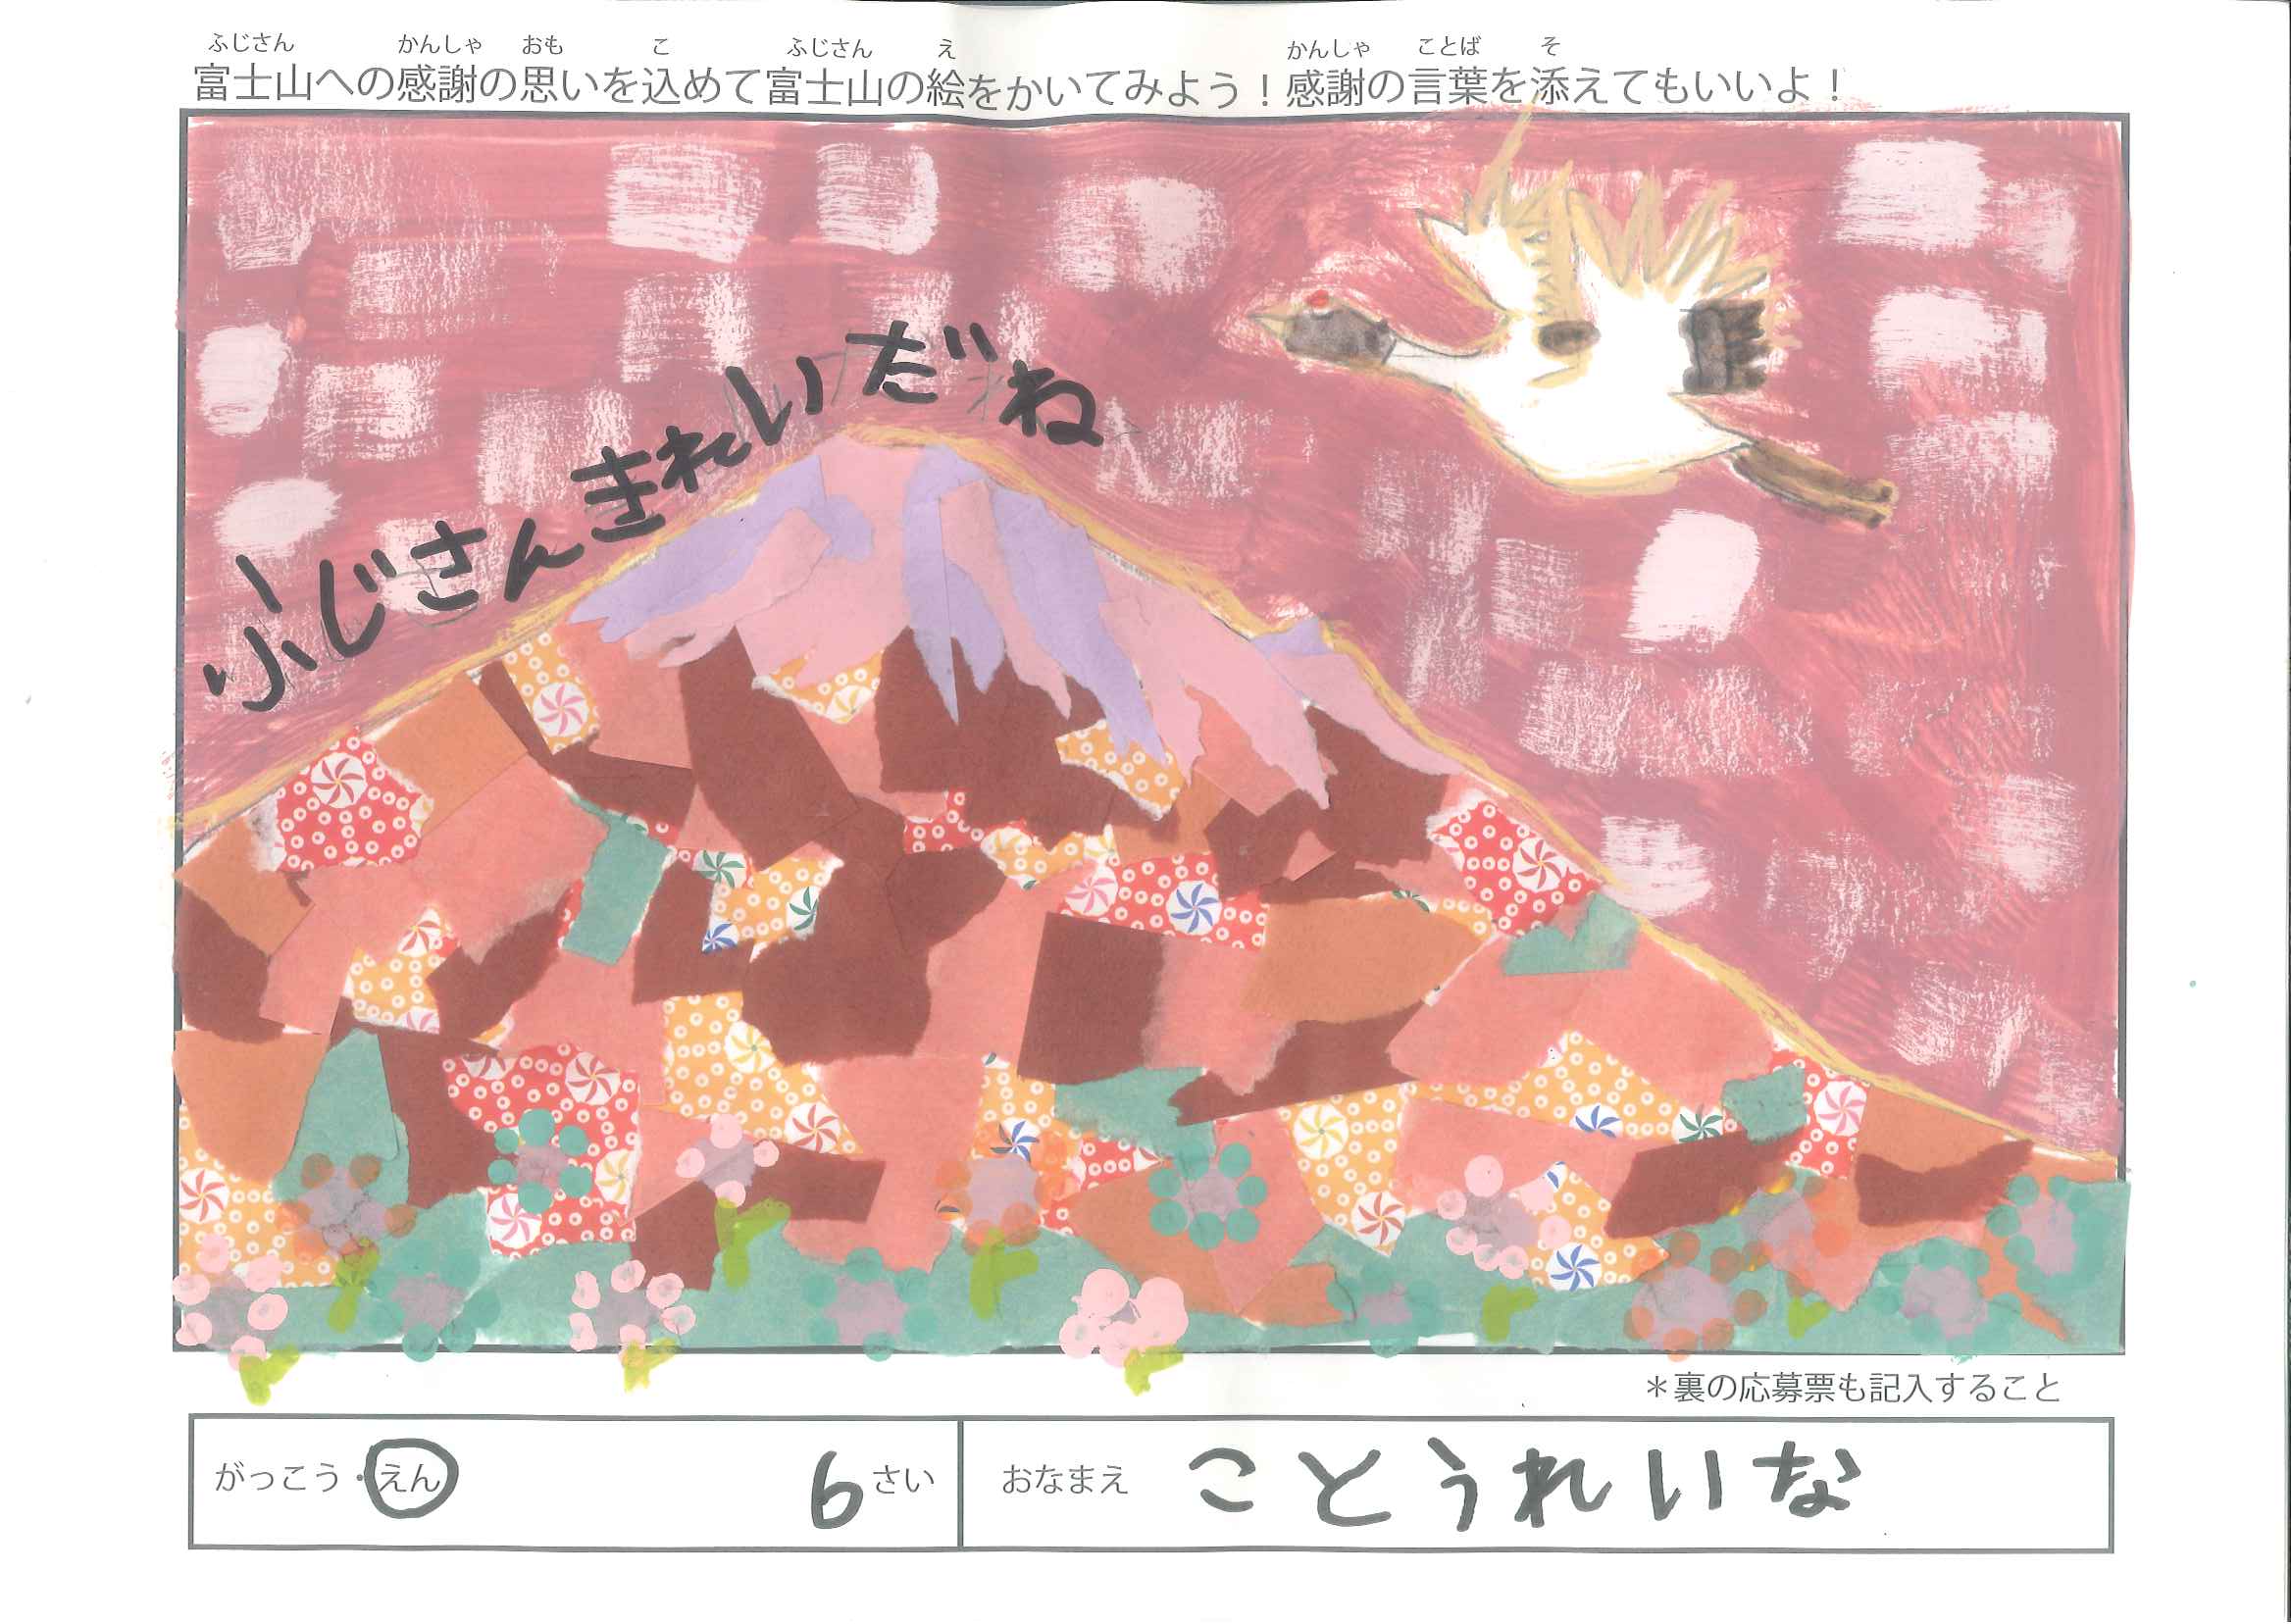 第四回 富士山御蔭祭 富士山の絵画コンクール（幼稚園・保育園の部）